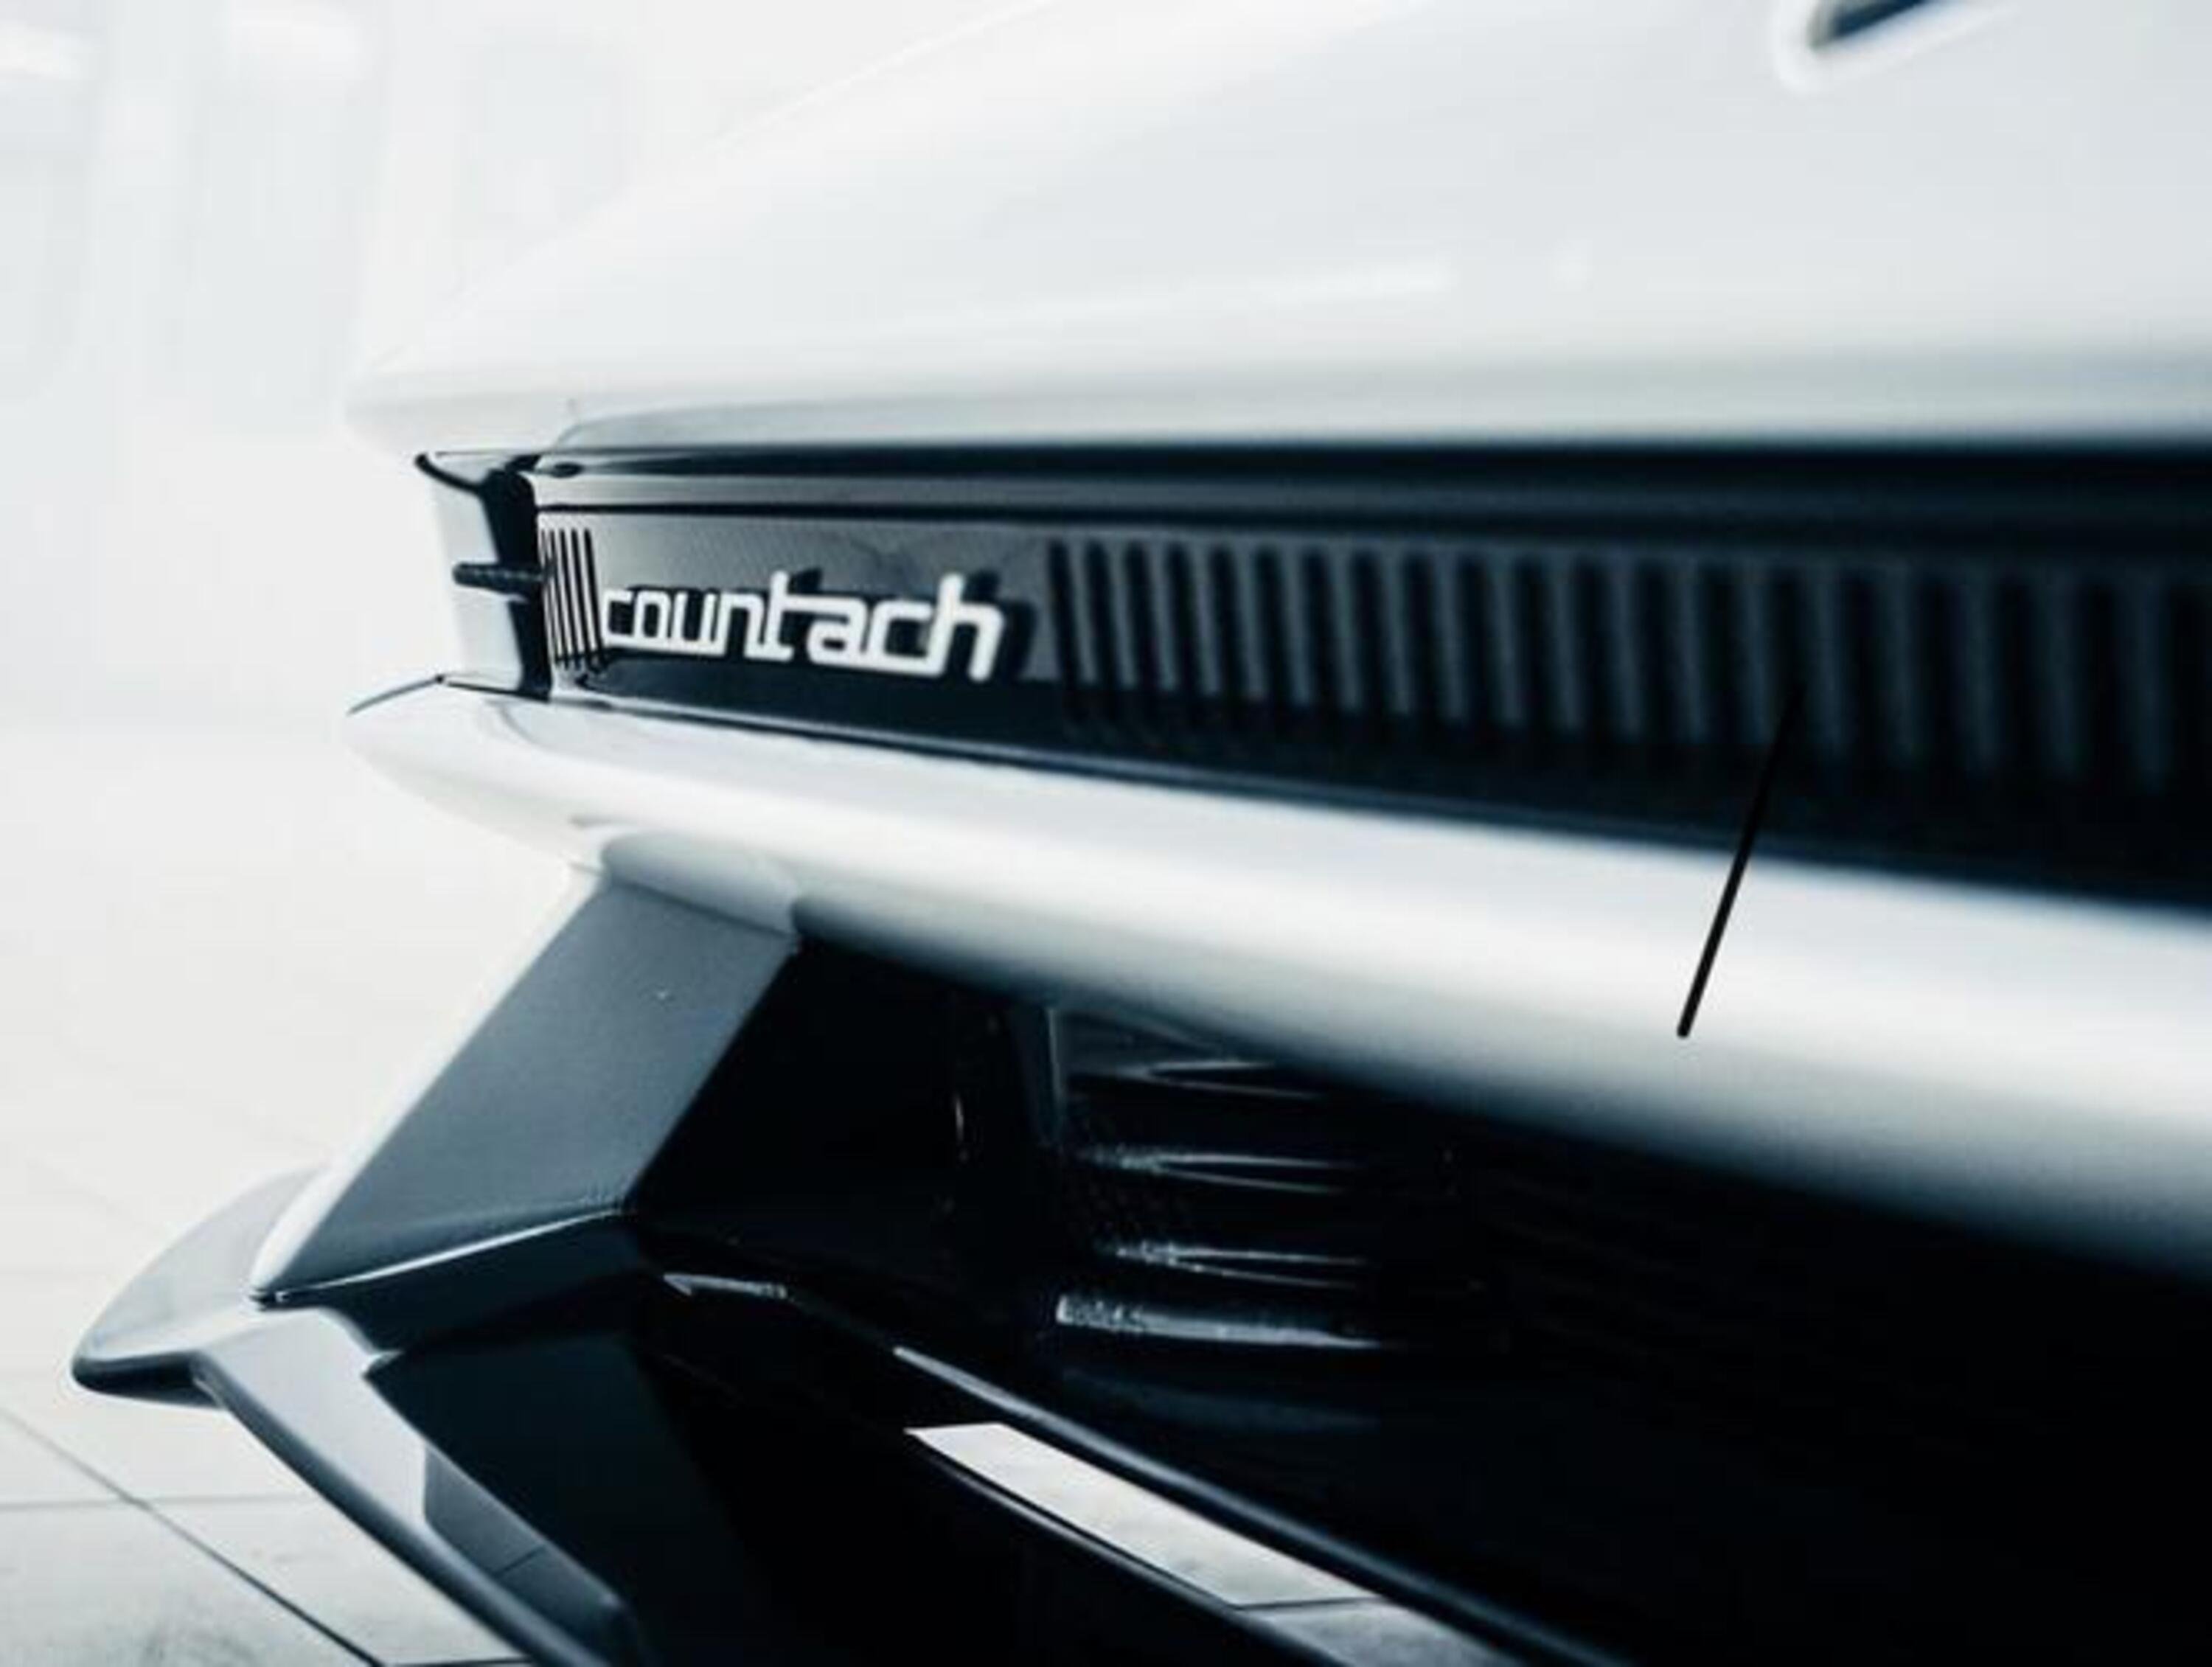 Lamborghini Countach, Altre immagini della serie speciale